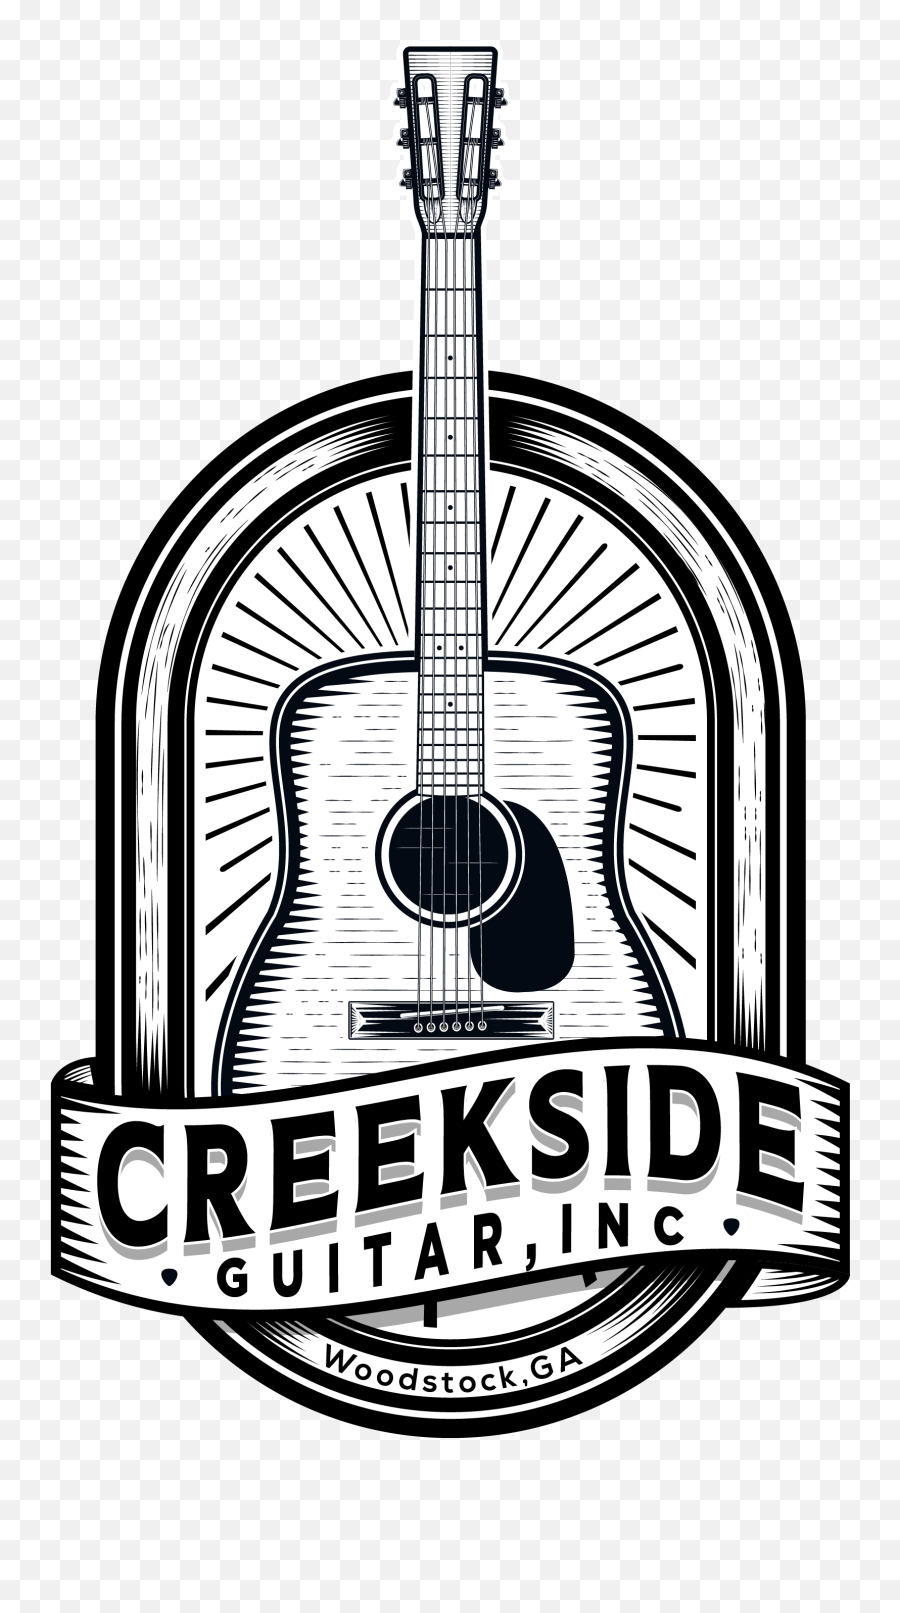 Creekside Guitar Inc Woodstock Ga U2013 Guitar Lessons - Bass Instruments Emoji,Guitar Logo